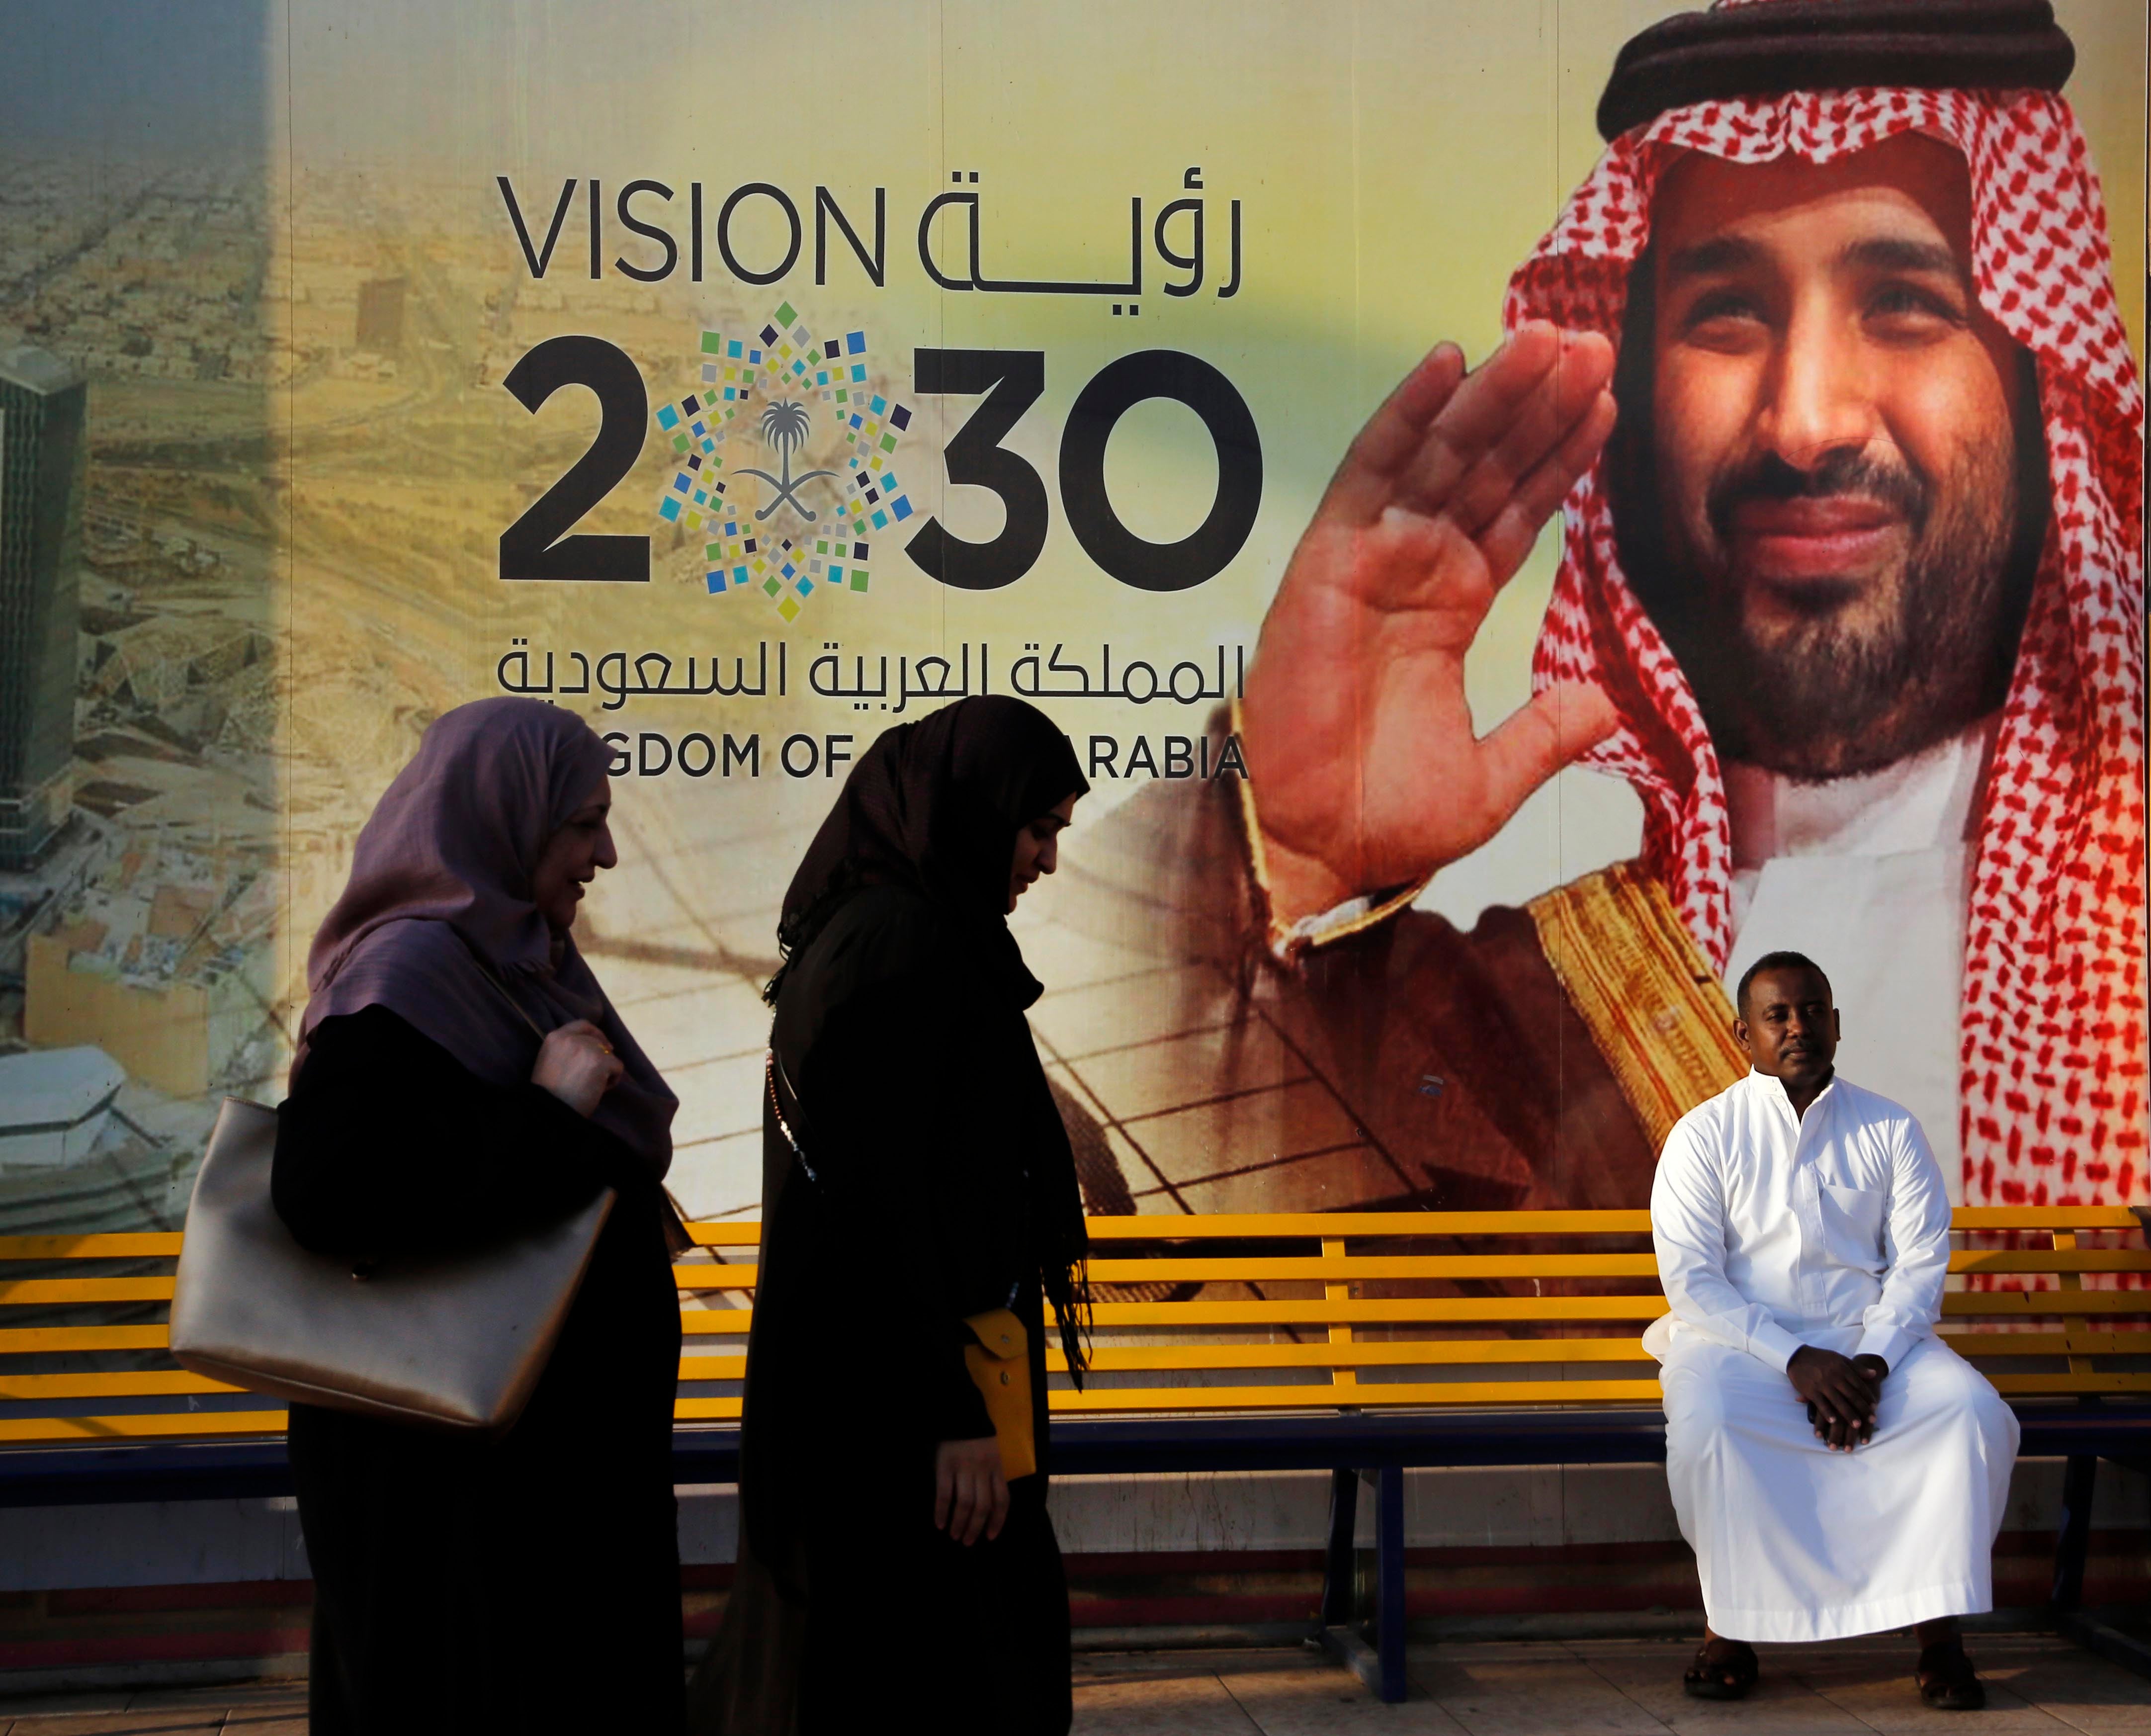 Deux femmes passaient devant une affiche promouvant le projet « Vision 2030 » du prince héritier saoudien Mohammed ben Salmane dans une rue de Djeddah, en 2019.